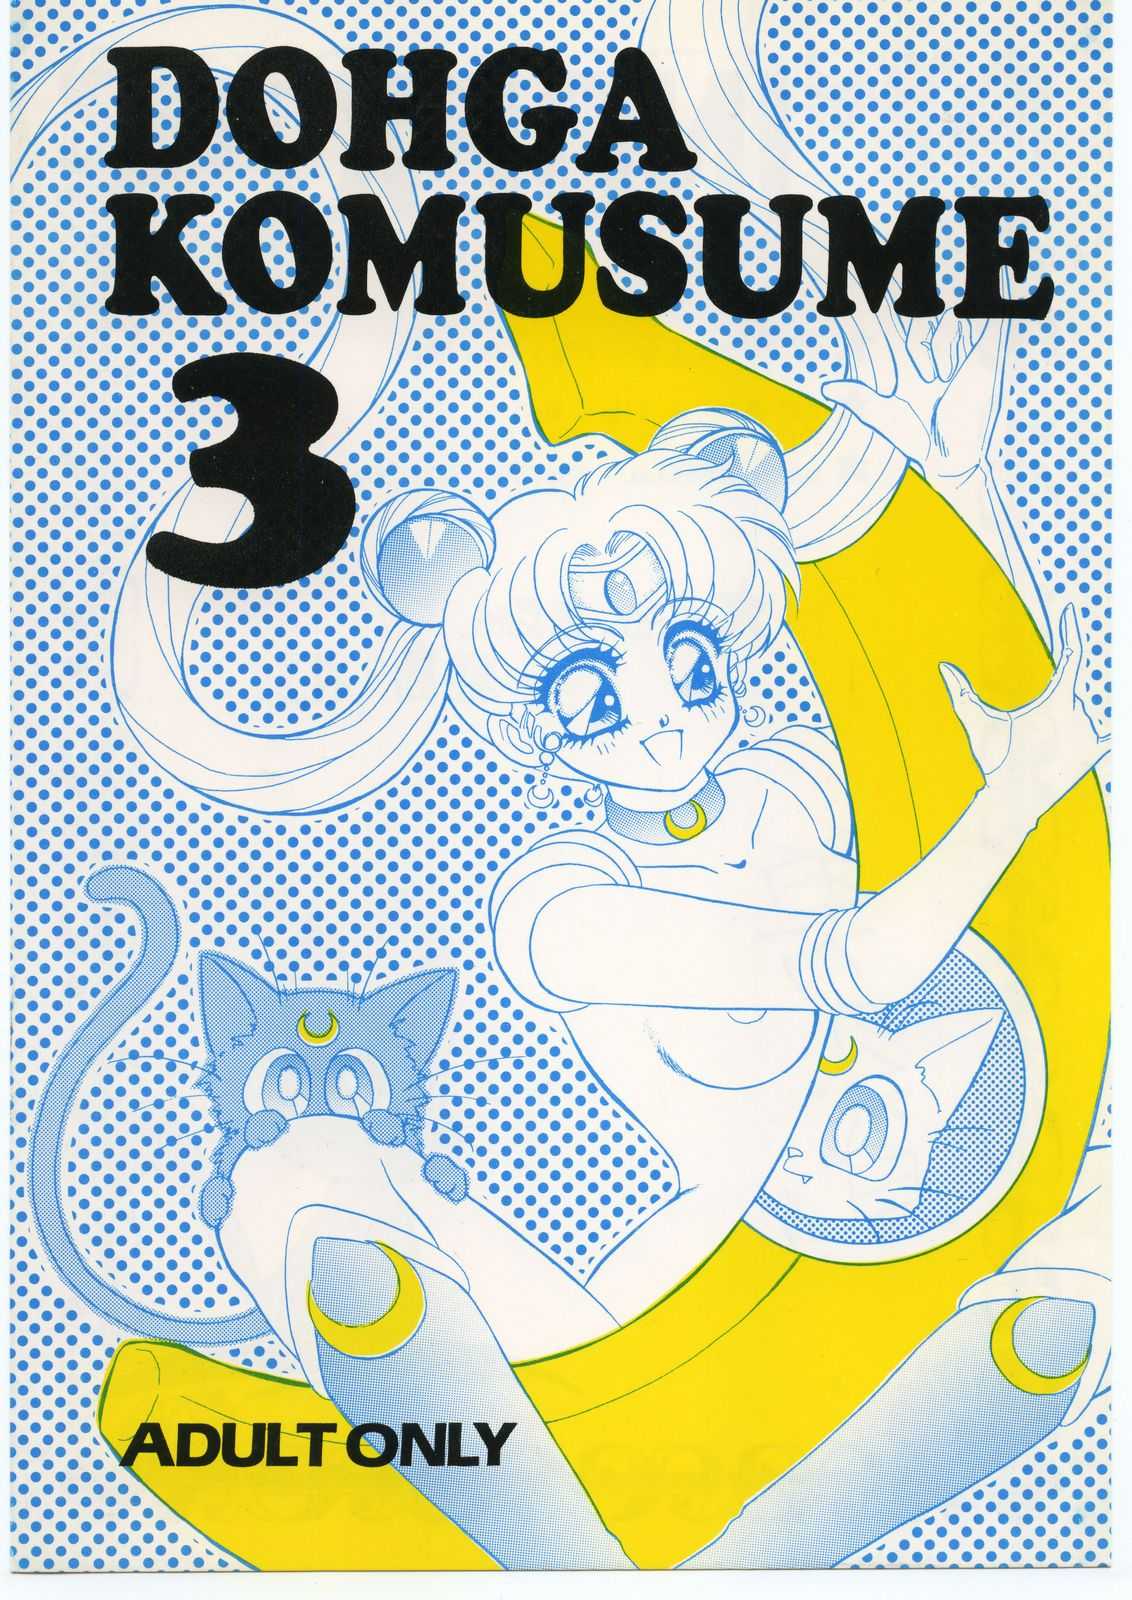 Dohga Komusume 3 (not sailor moon) 